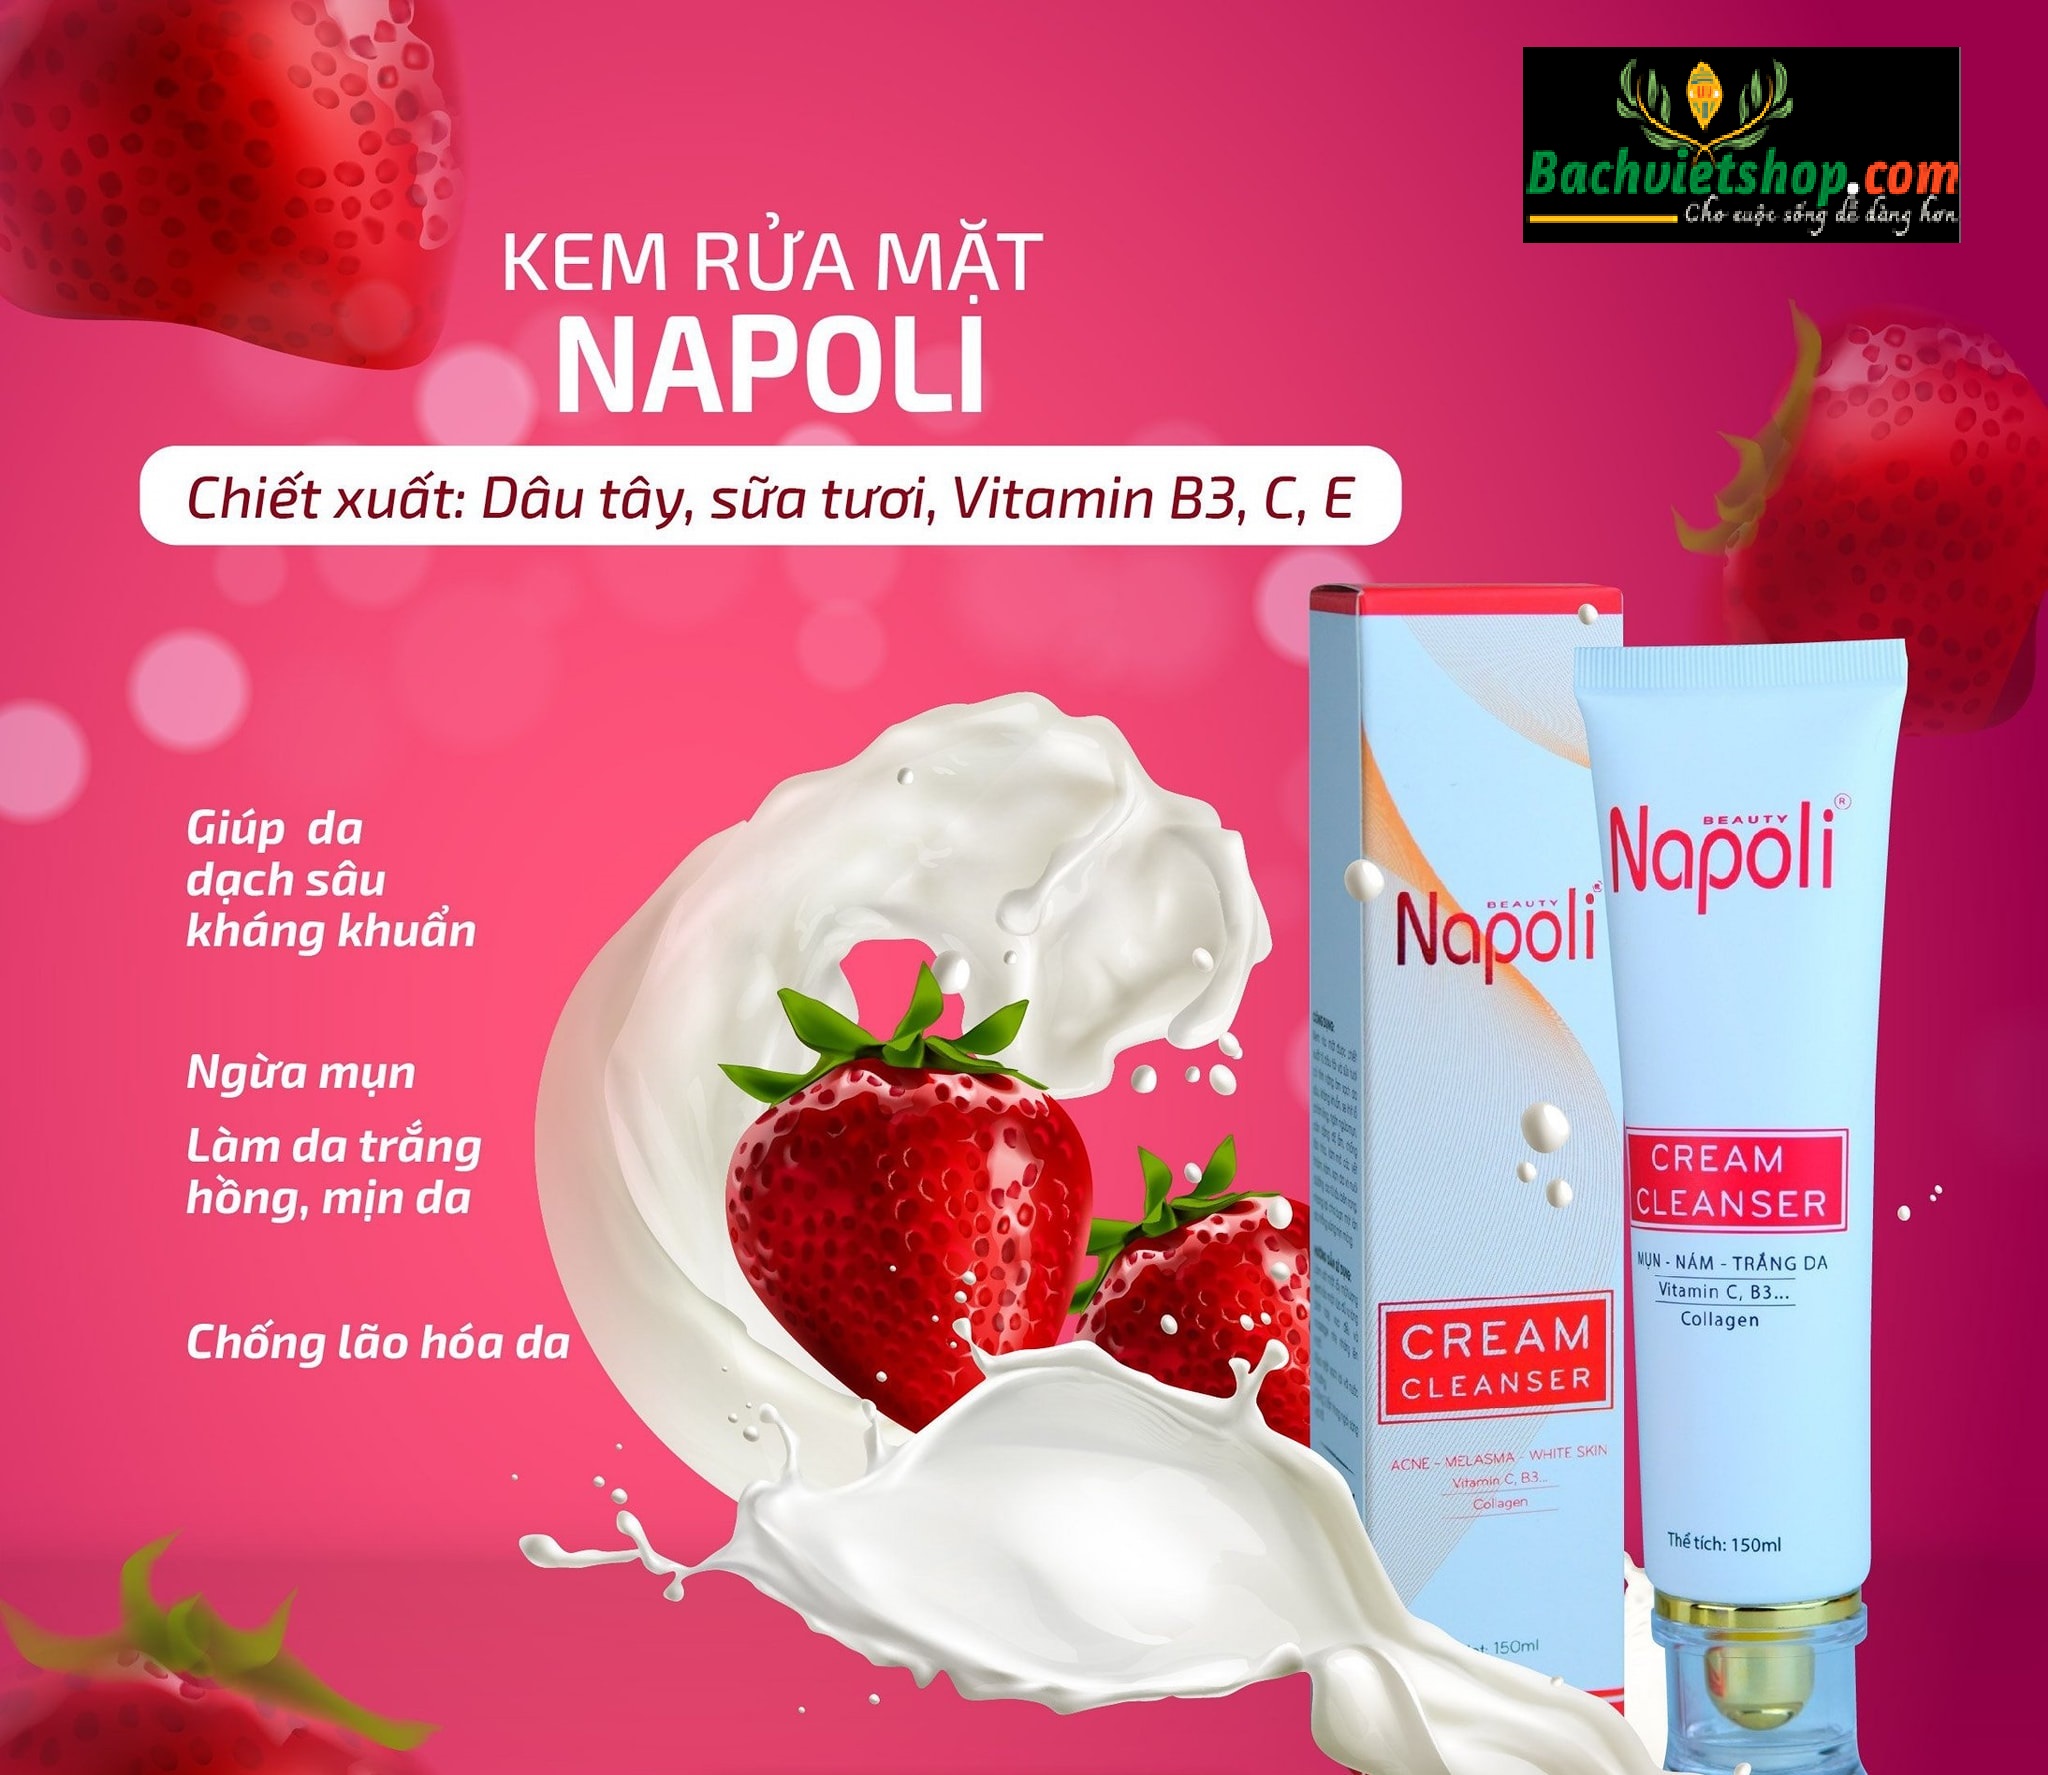 Kem Rửa Mặt Napoli - Lựa chọn hoàn hảo để làm sạch sâu và nuôi dưỡng da!